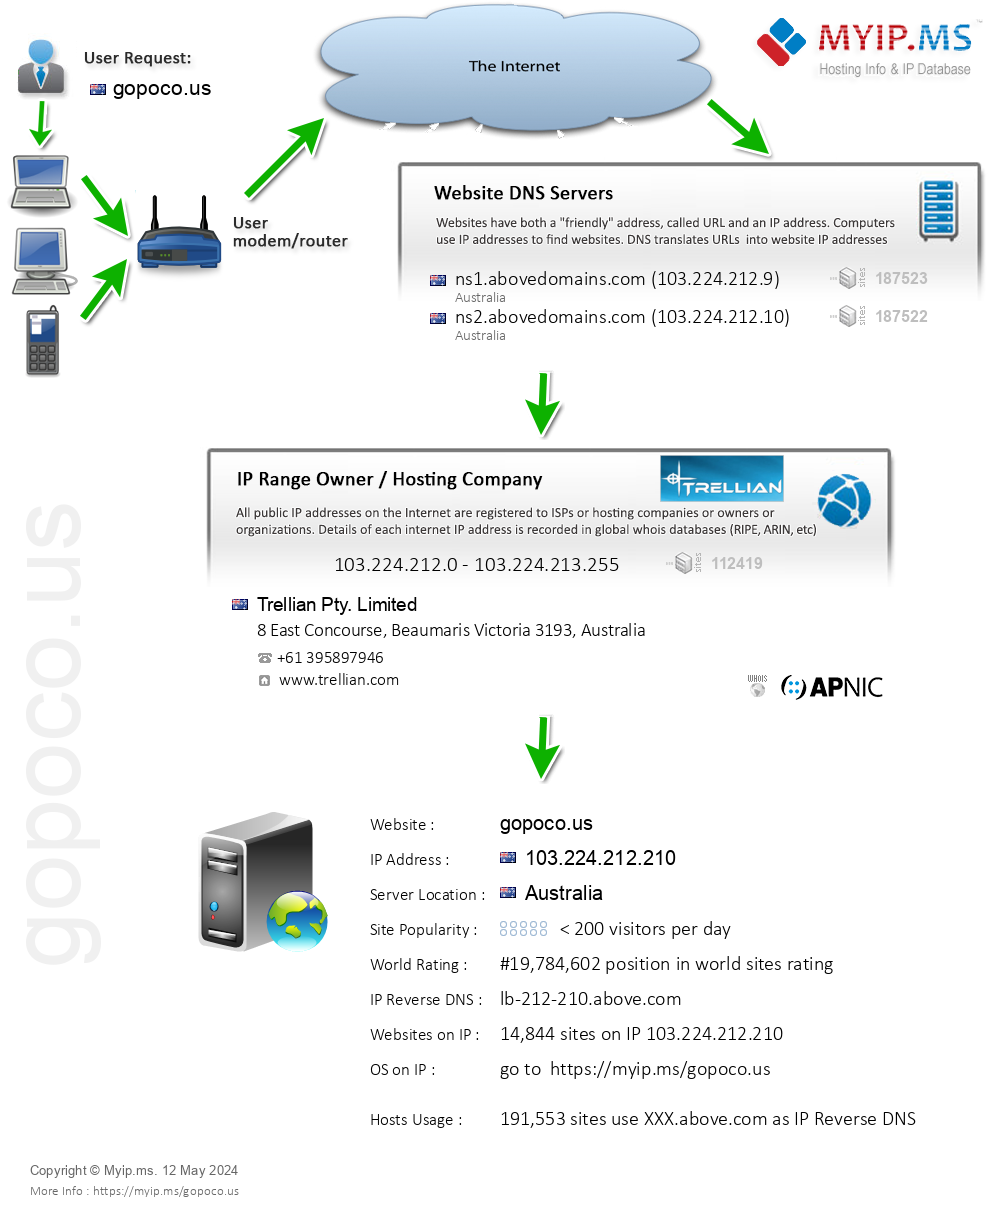 Gopoco.us - Website Hosting Visual IP Diagram